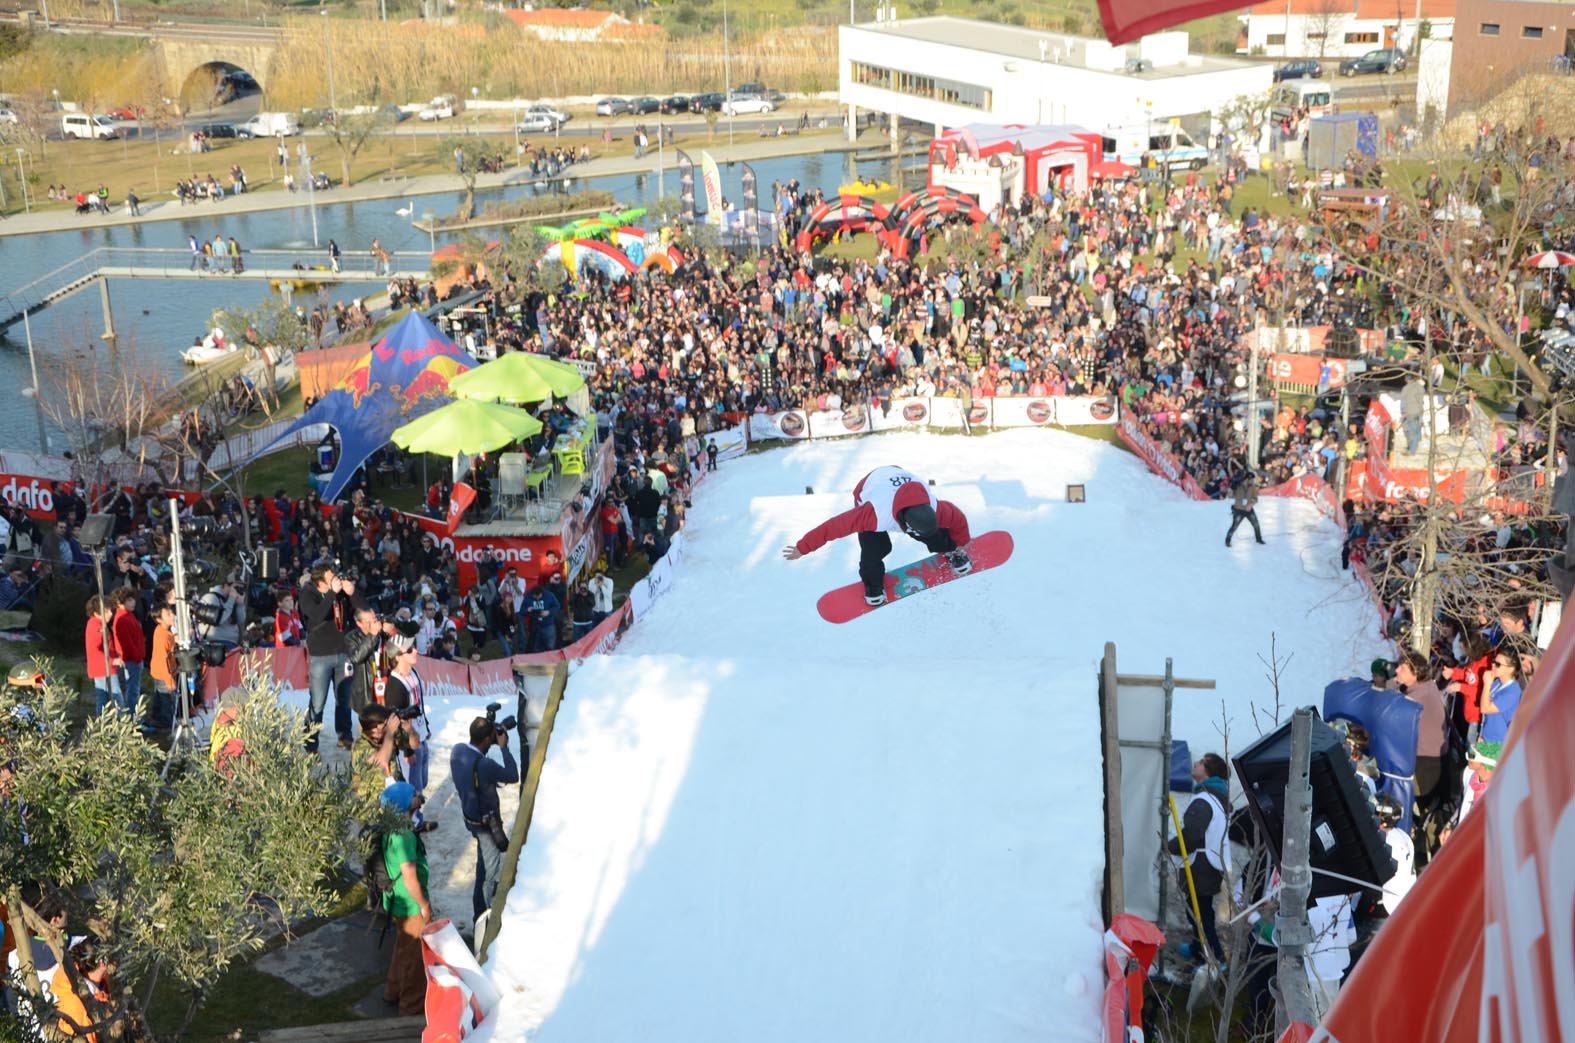 La copa de Europa FIS de Snowboard llega a Portugal